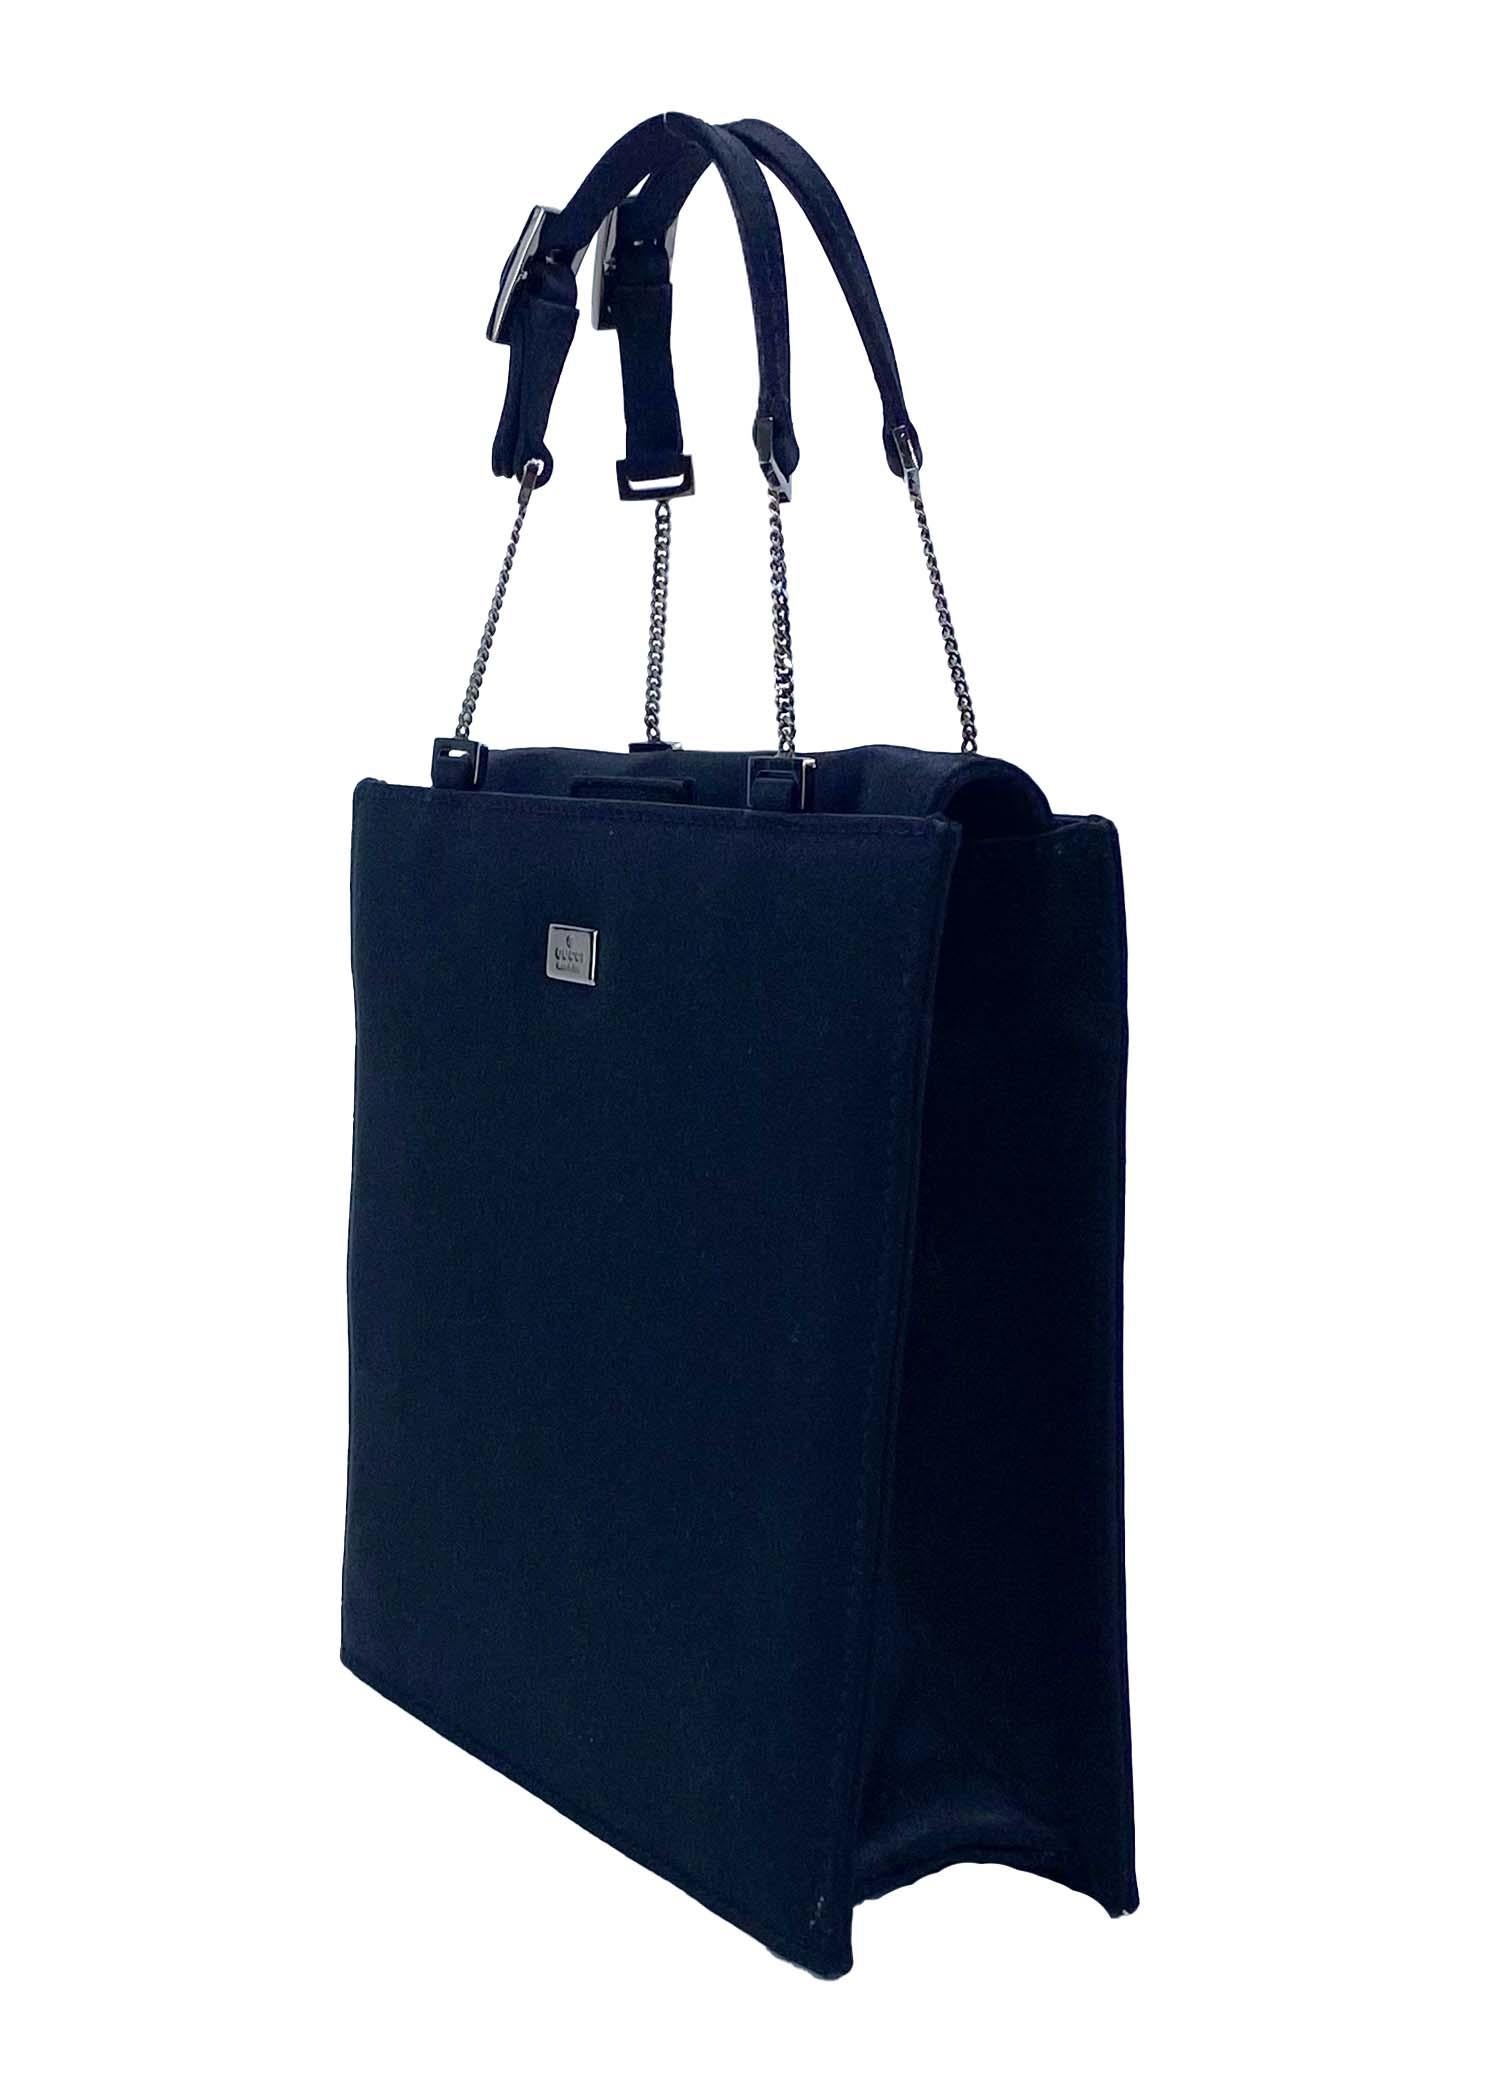 Présentation d'un mini sac de soirée Gucci en satin, conçu par Tom Ford. Ce petit sac carré est fabriqué en satin noir et comporte une chaîne et des accessoires de couleur argentée. Datant du début des années 2000, ce micro-sac est parfait pour tous